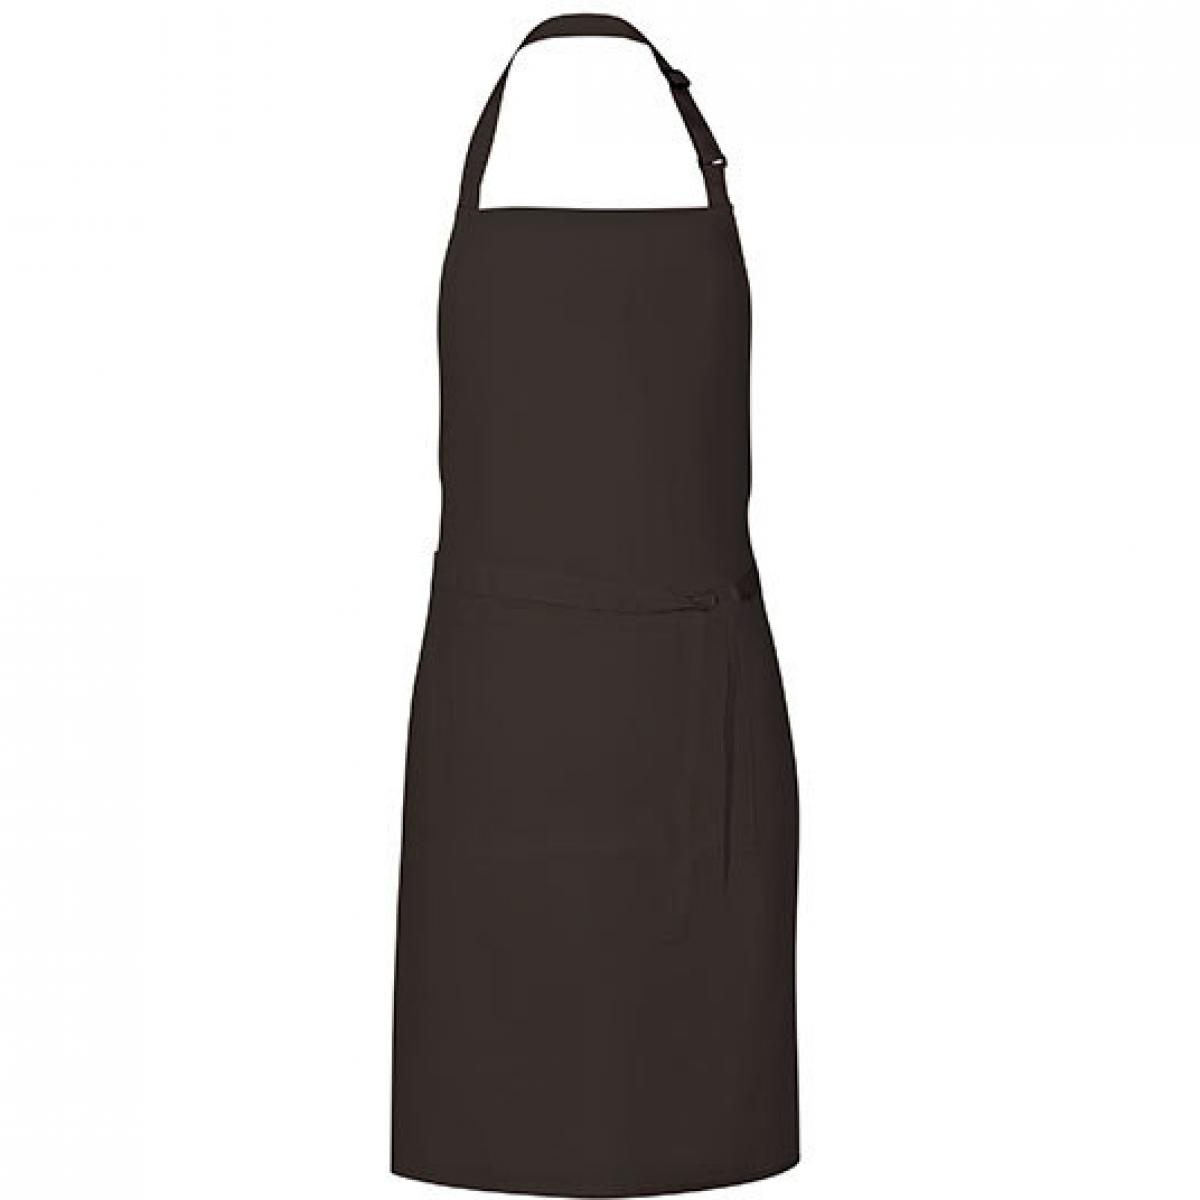 Hersteller: Link Kitchen Wear Herstellernummer: GS8572 Artikelbezeichnung: Grill Apron - 85 x 72 cm - Waschbar bis 60 °C Farbe: Black